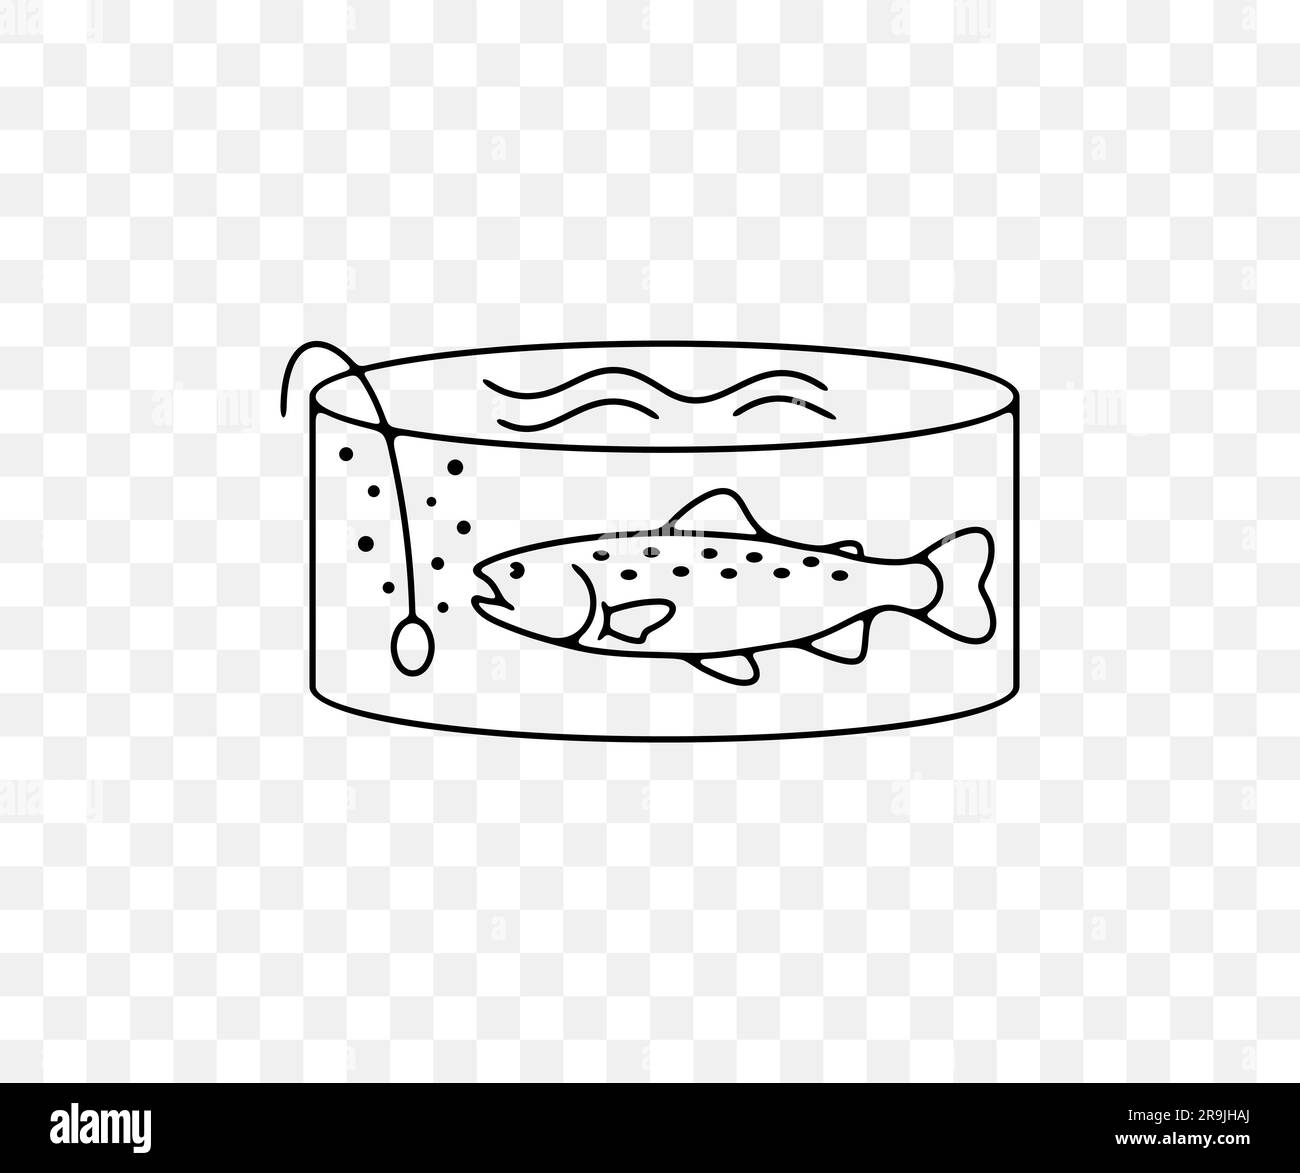 Fischzucht oder Fischzucht, Regenbogenforelle in gefiltertem Pool, lineares Grafikdesign. Fisch, Fischerei, Tiere, Aquakultur, Fischzucht und Marikultur, vektor Stock Vektor